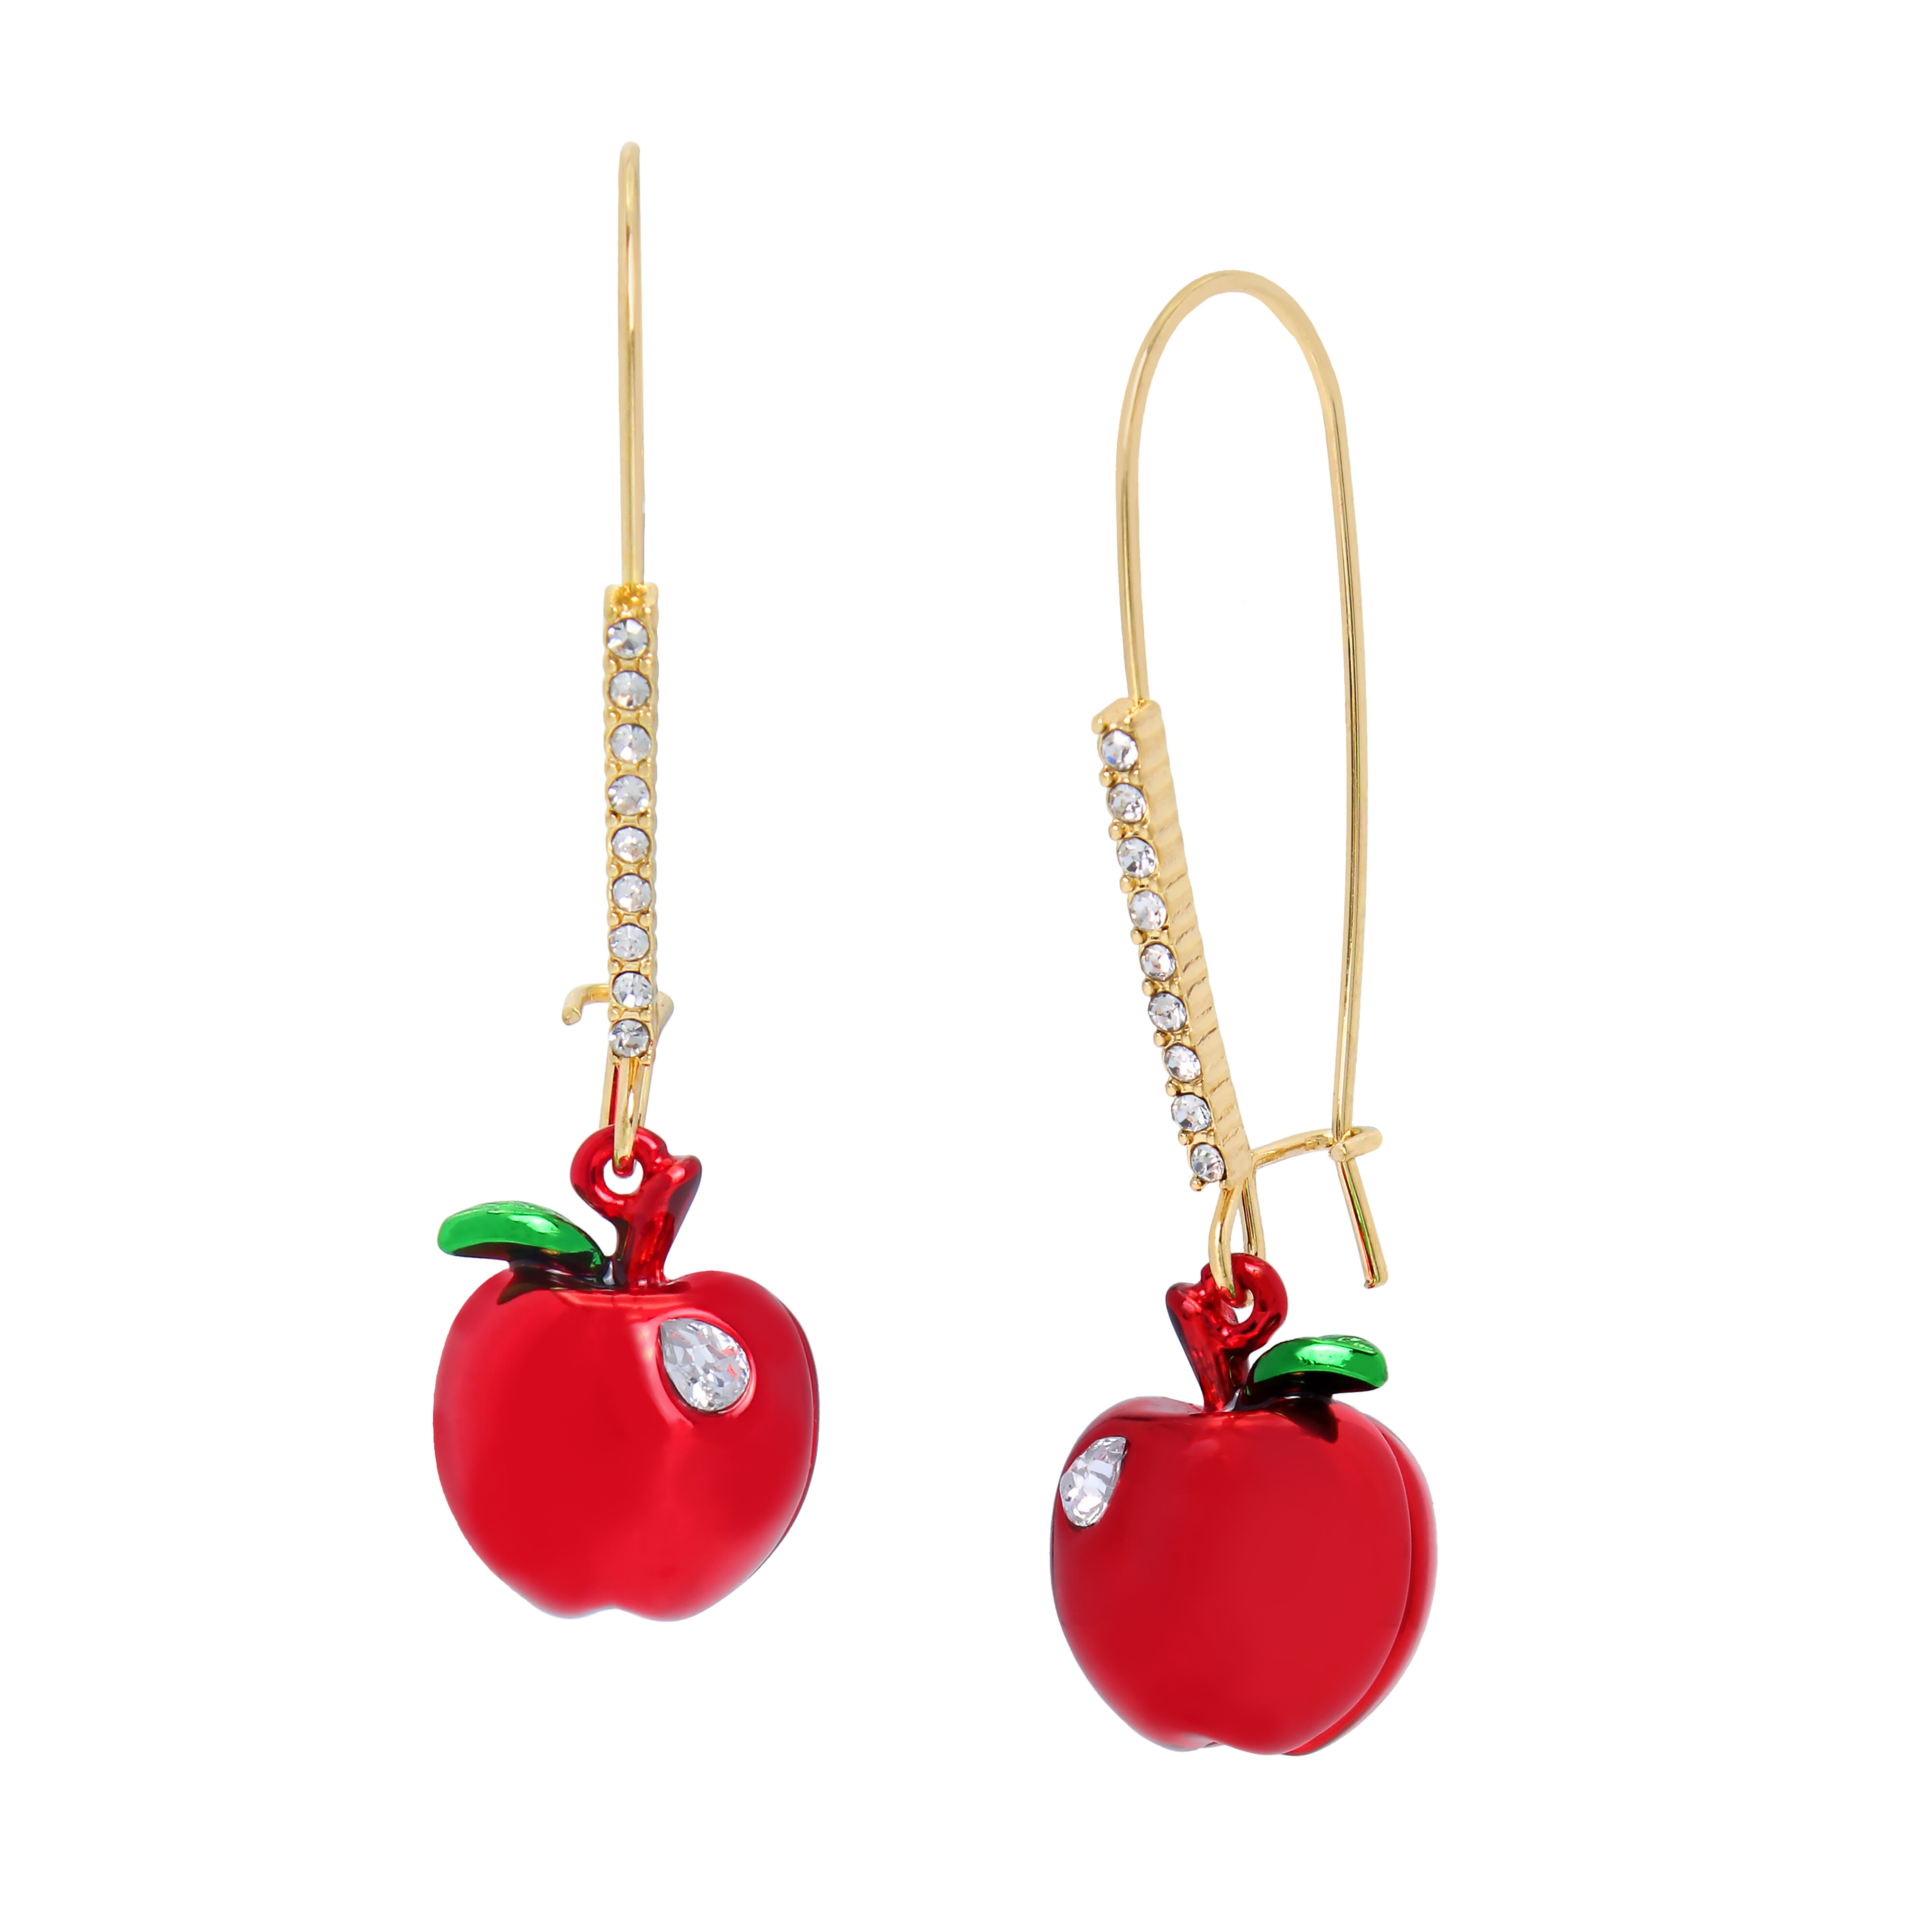 Bijuterii Femei Betsey Johnson Apple Dangle Earrings RedGold